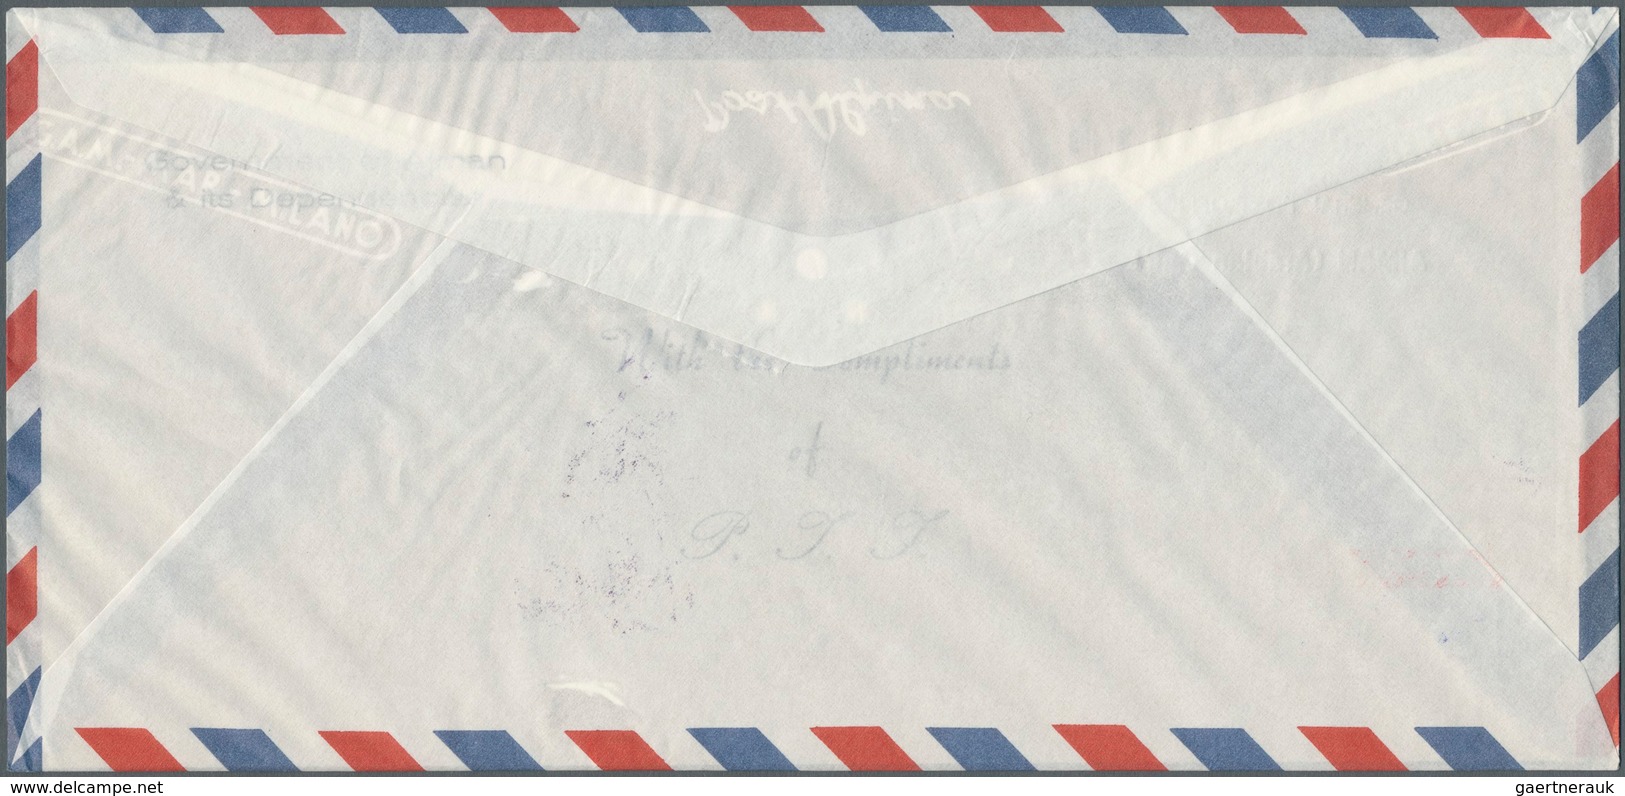 08014 Adschman / Ajman: 1969, SPACE (Apollo 9+10, Gagarin, White), four souvenir sheets with overprint, ea